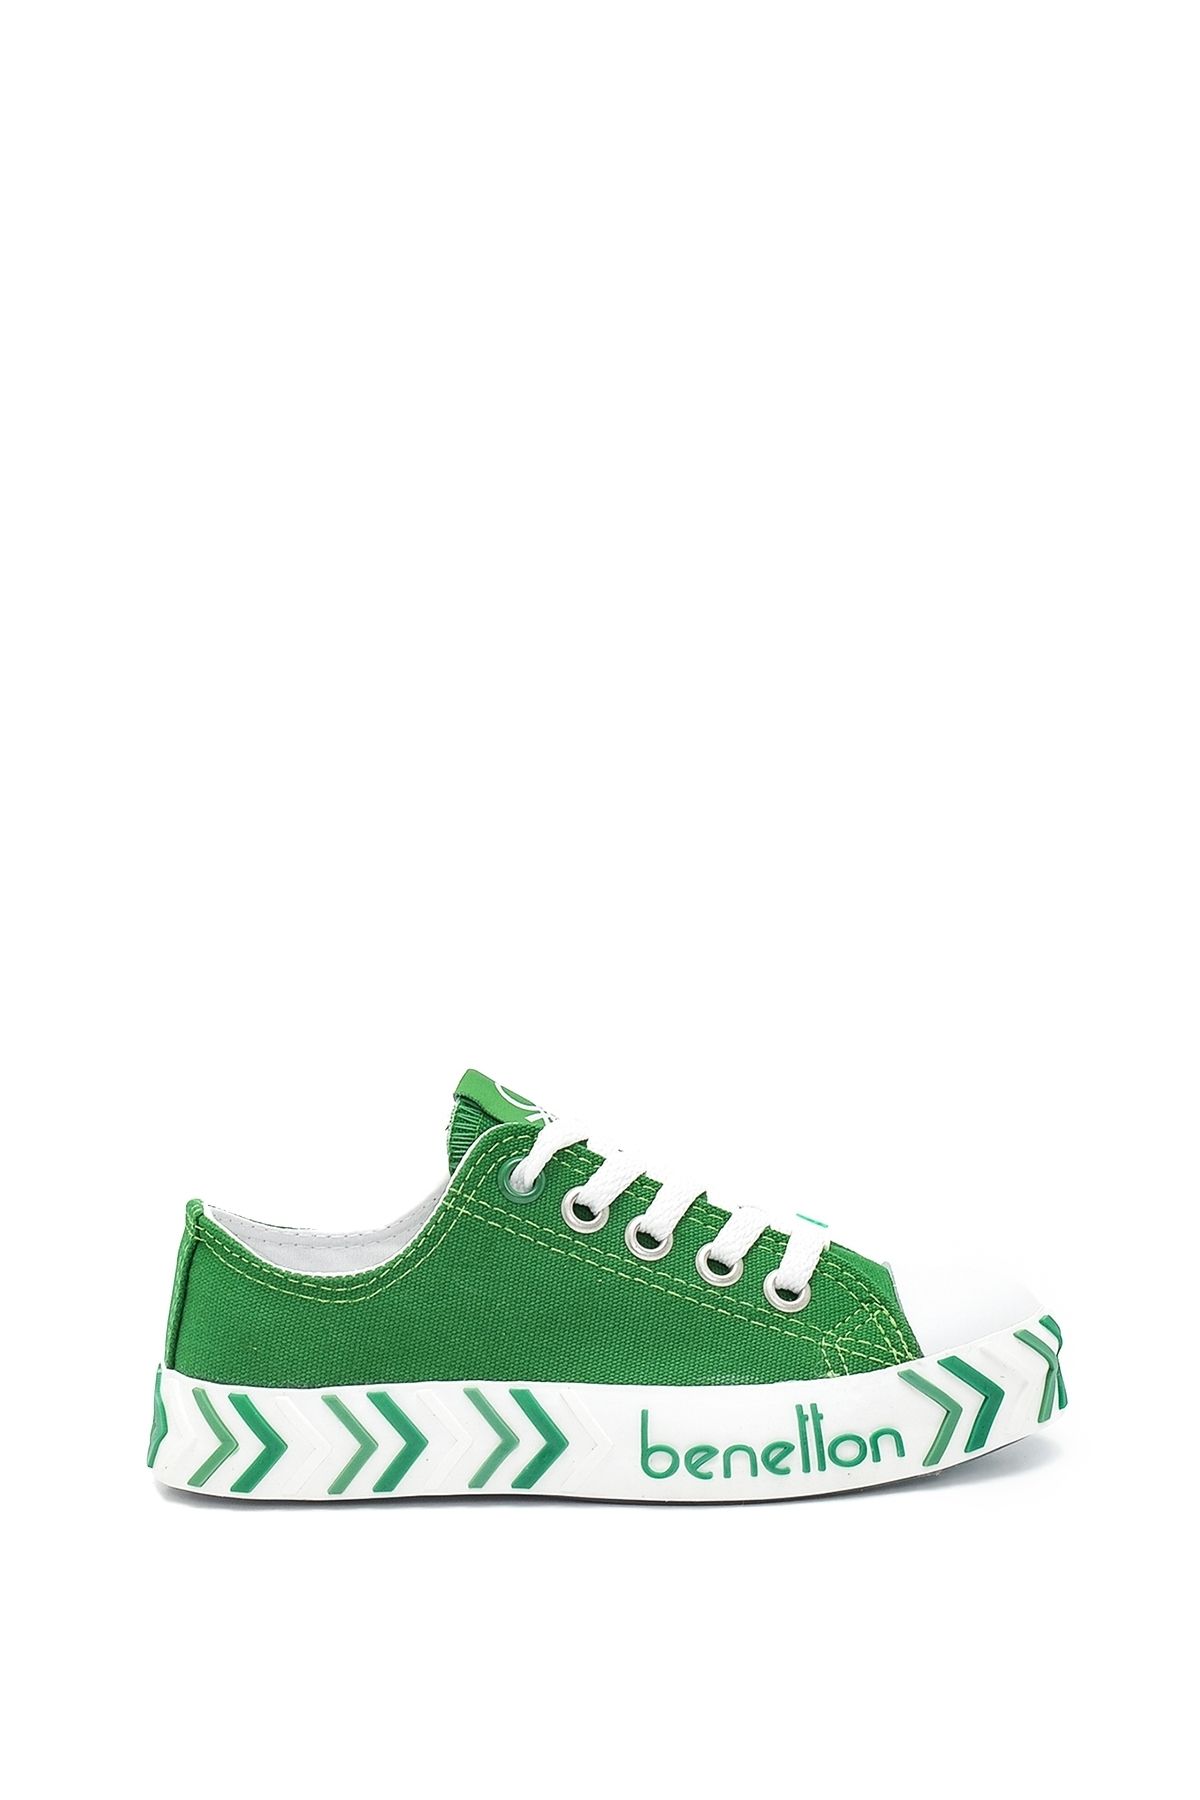 Benetton Unisex Çocuk Benetton Filet Çocuk Spor Ayakkabı BN-30685